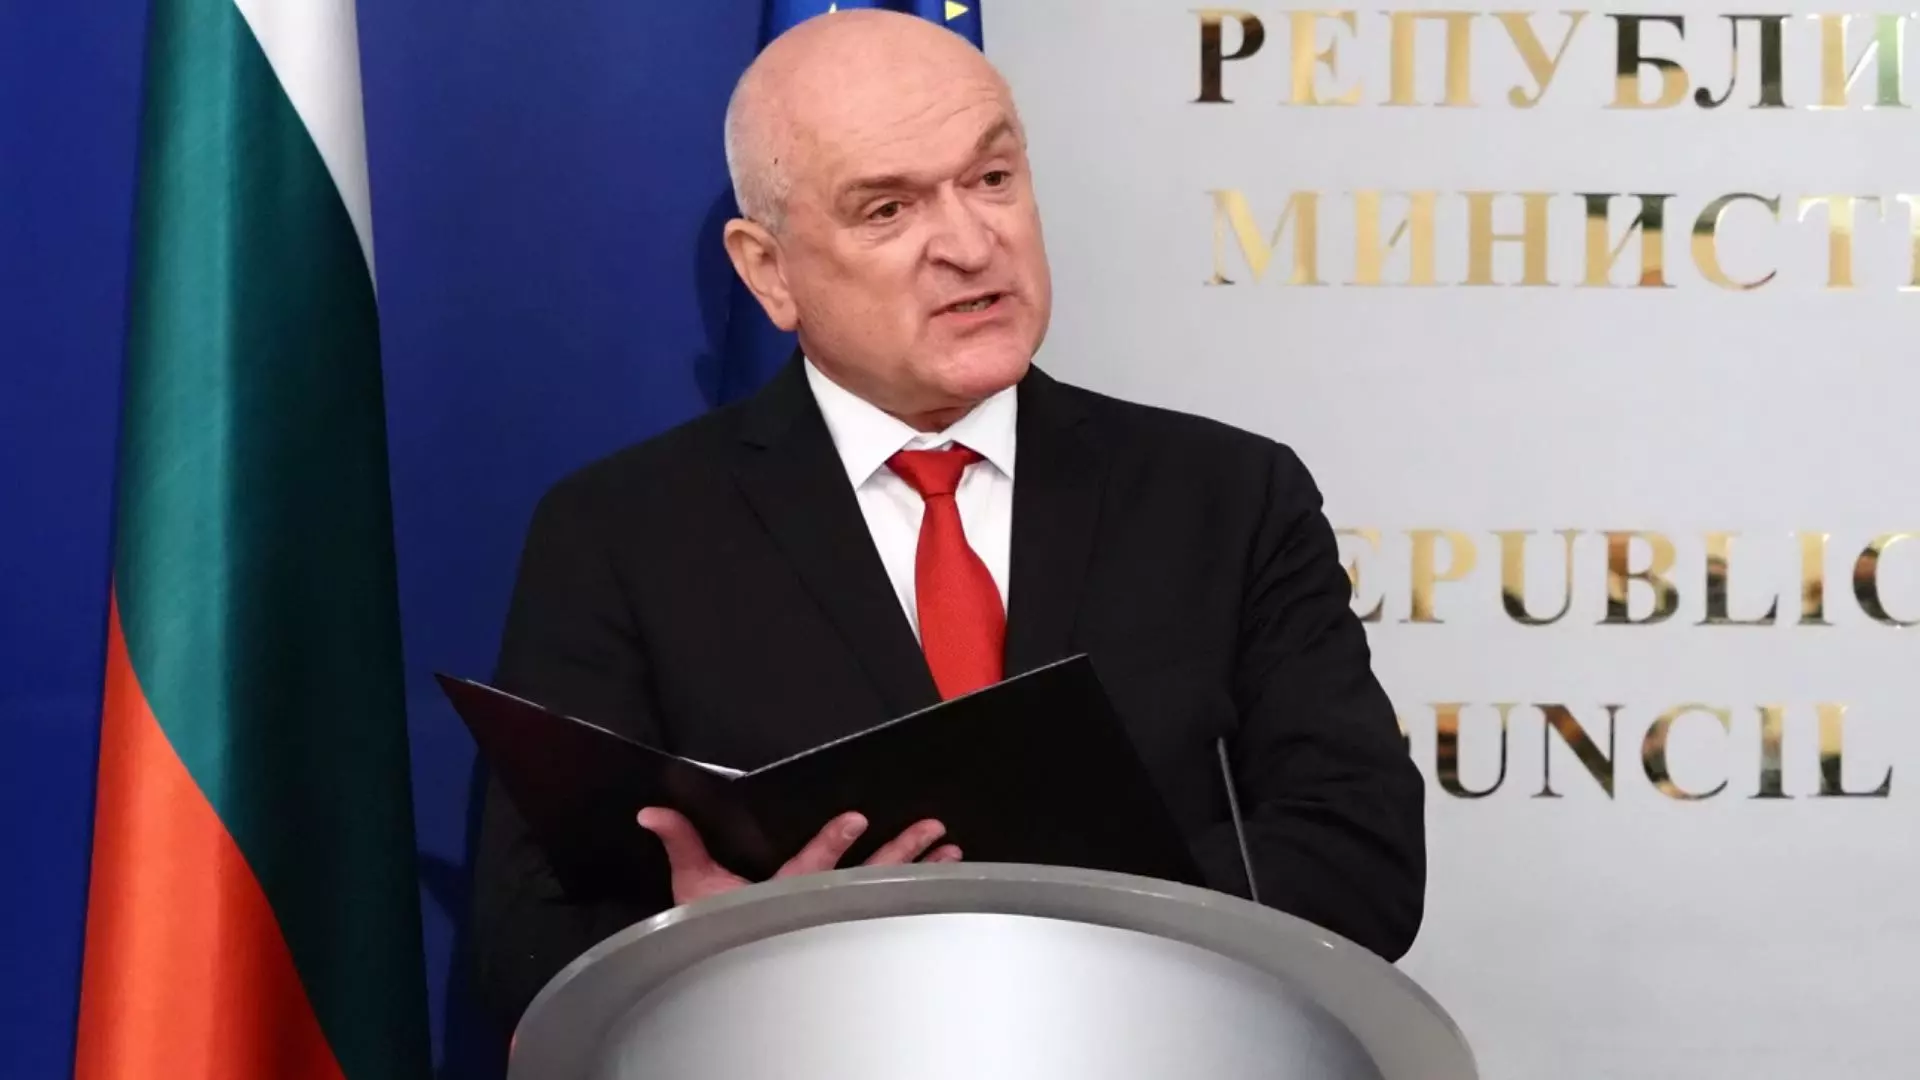 "Съвсем искрено говоря": Главчев бил забравил, че Даниел Митов е зам.-председател на ГЕРБ